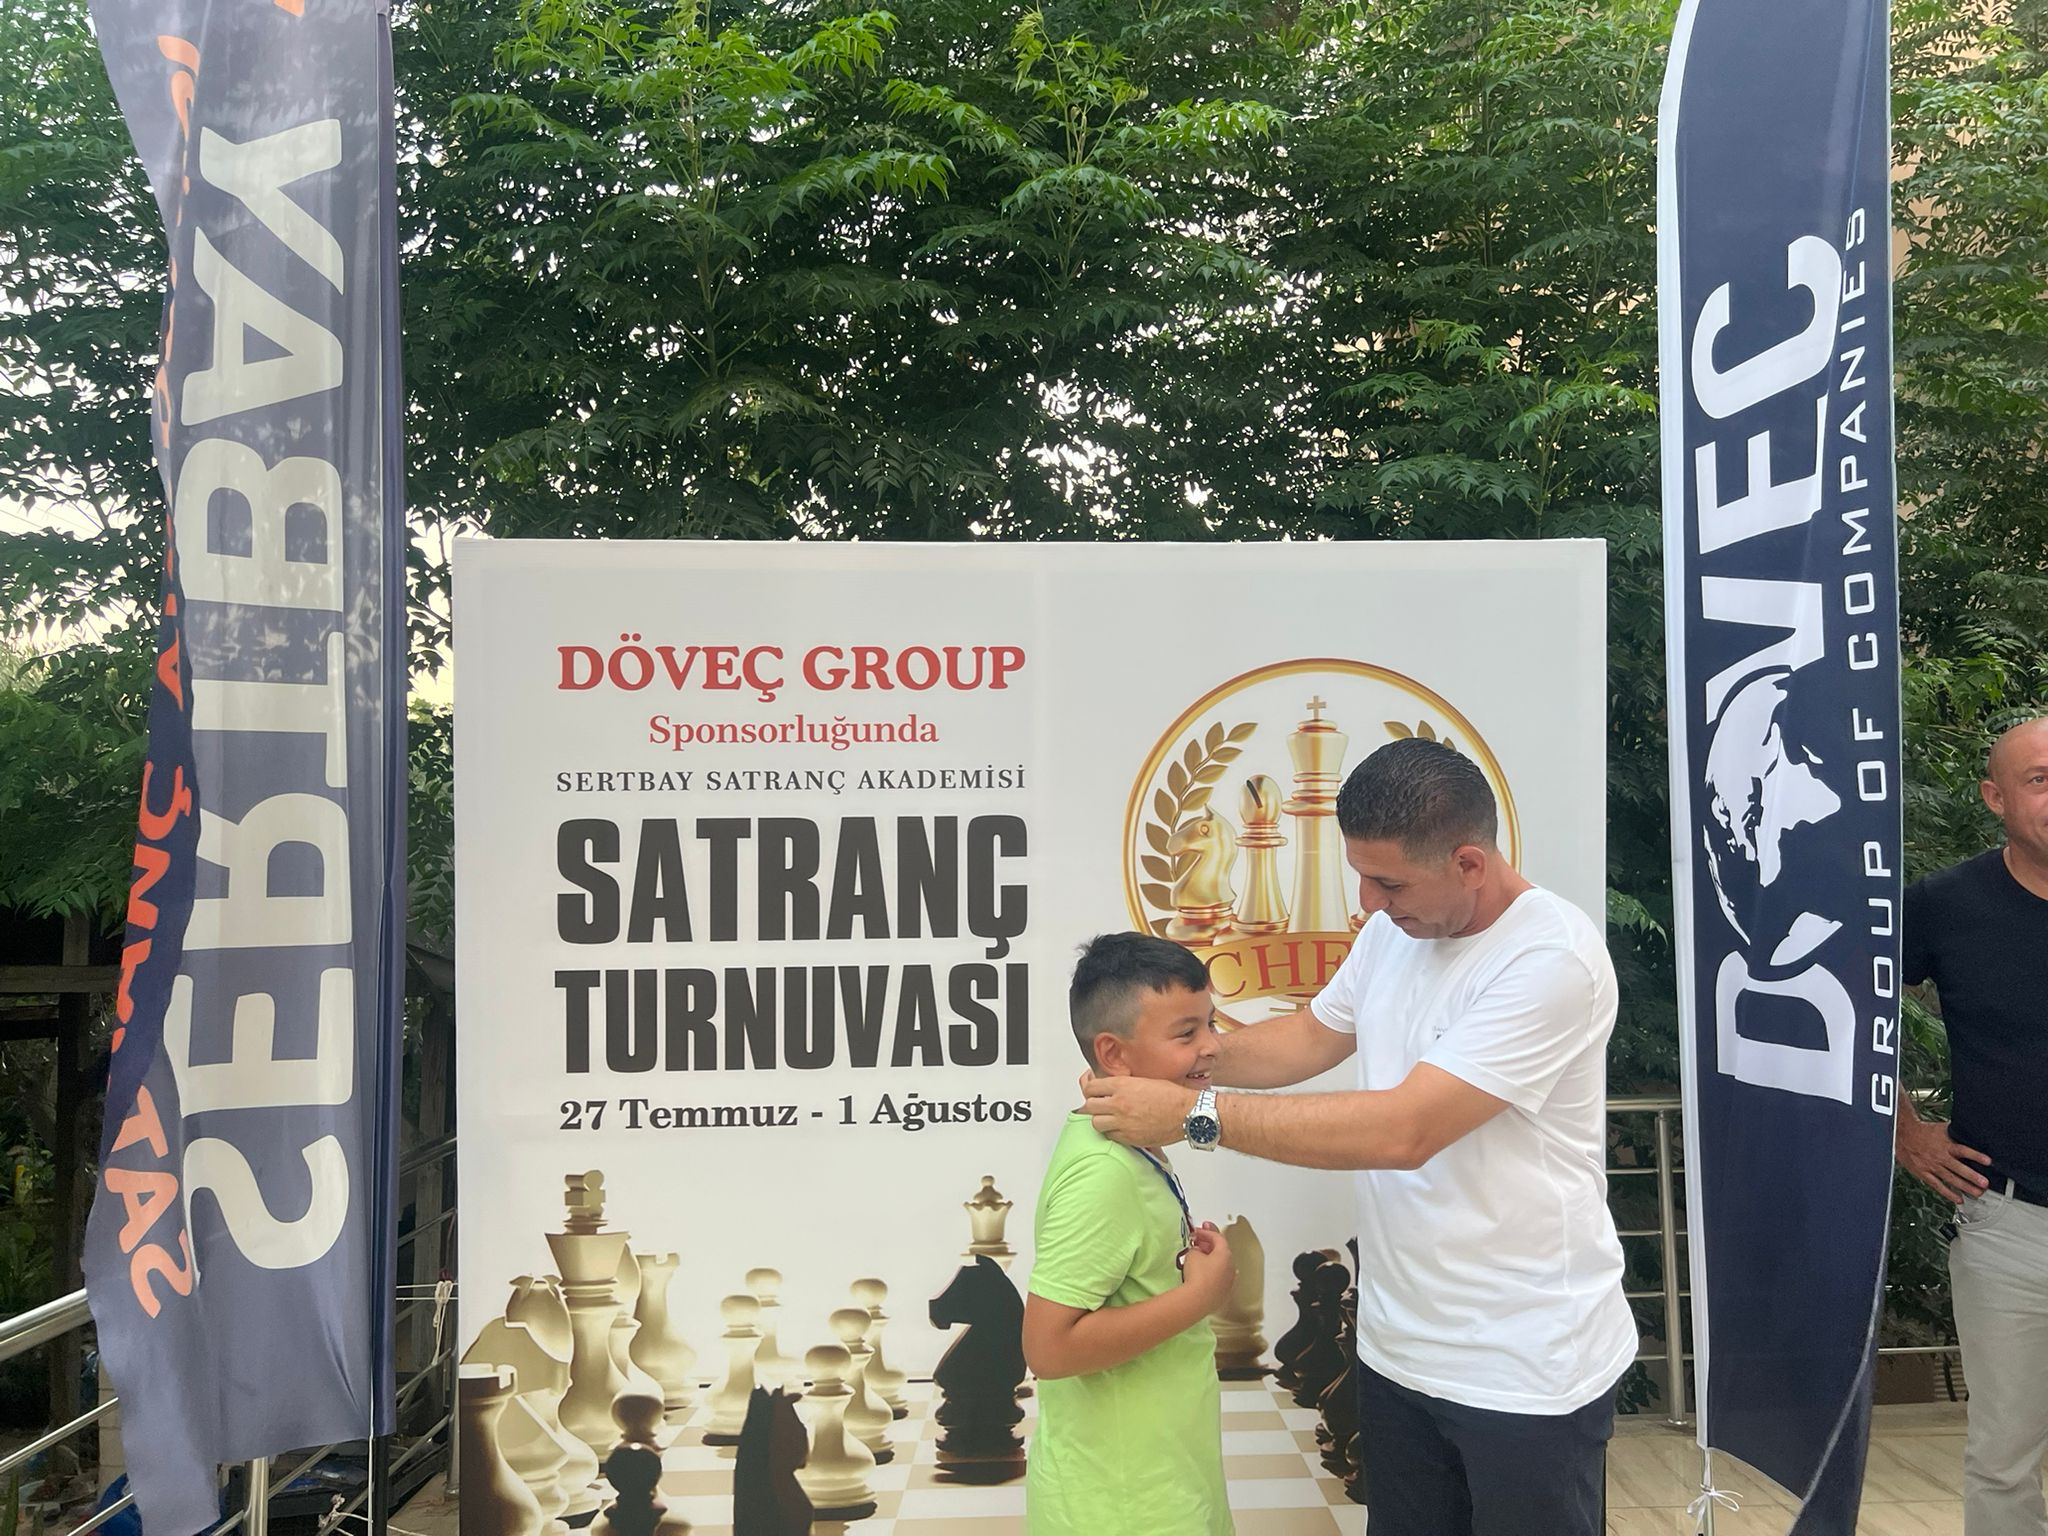 Döveç Group Ana sponsorluğunda ödüllü satranç turnuvası gerçekleştirildi